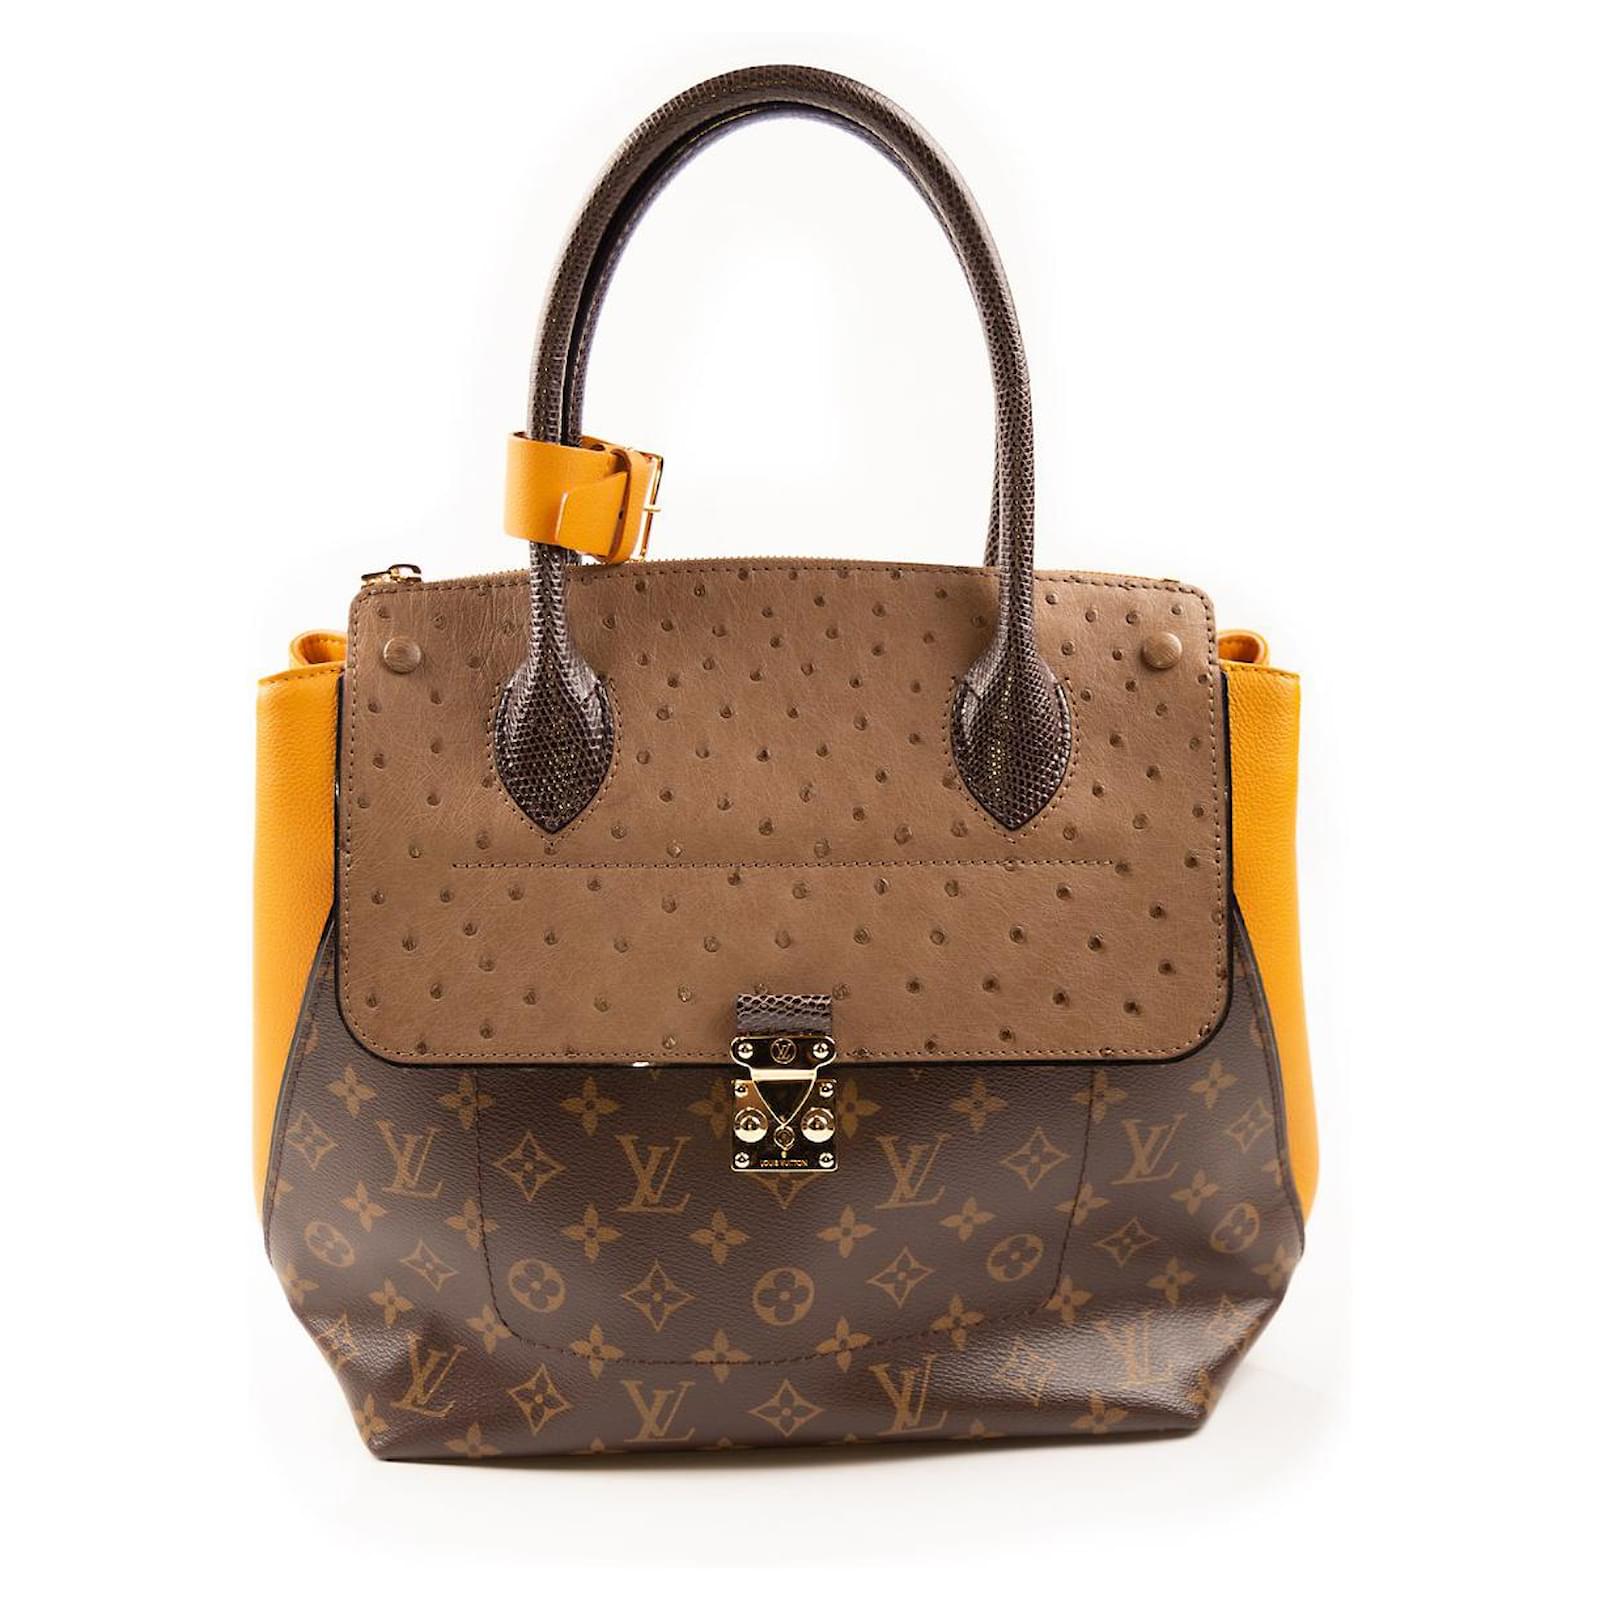 Stunning Handbags From Louis Vuitton! 